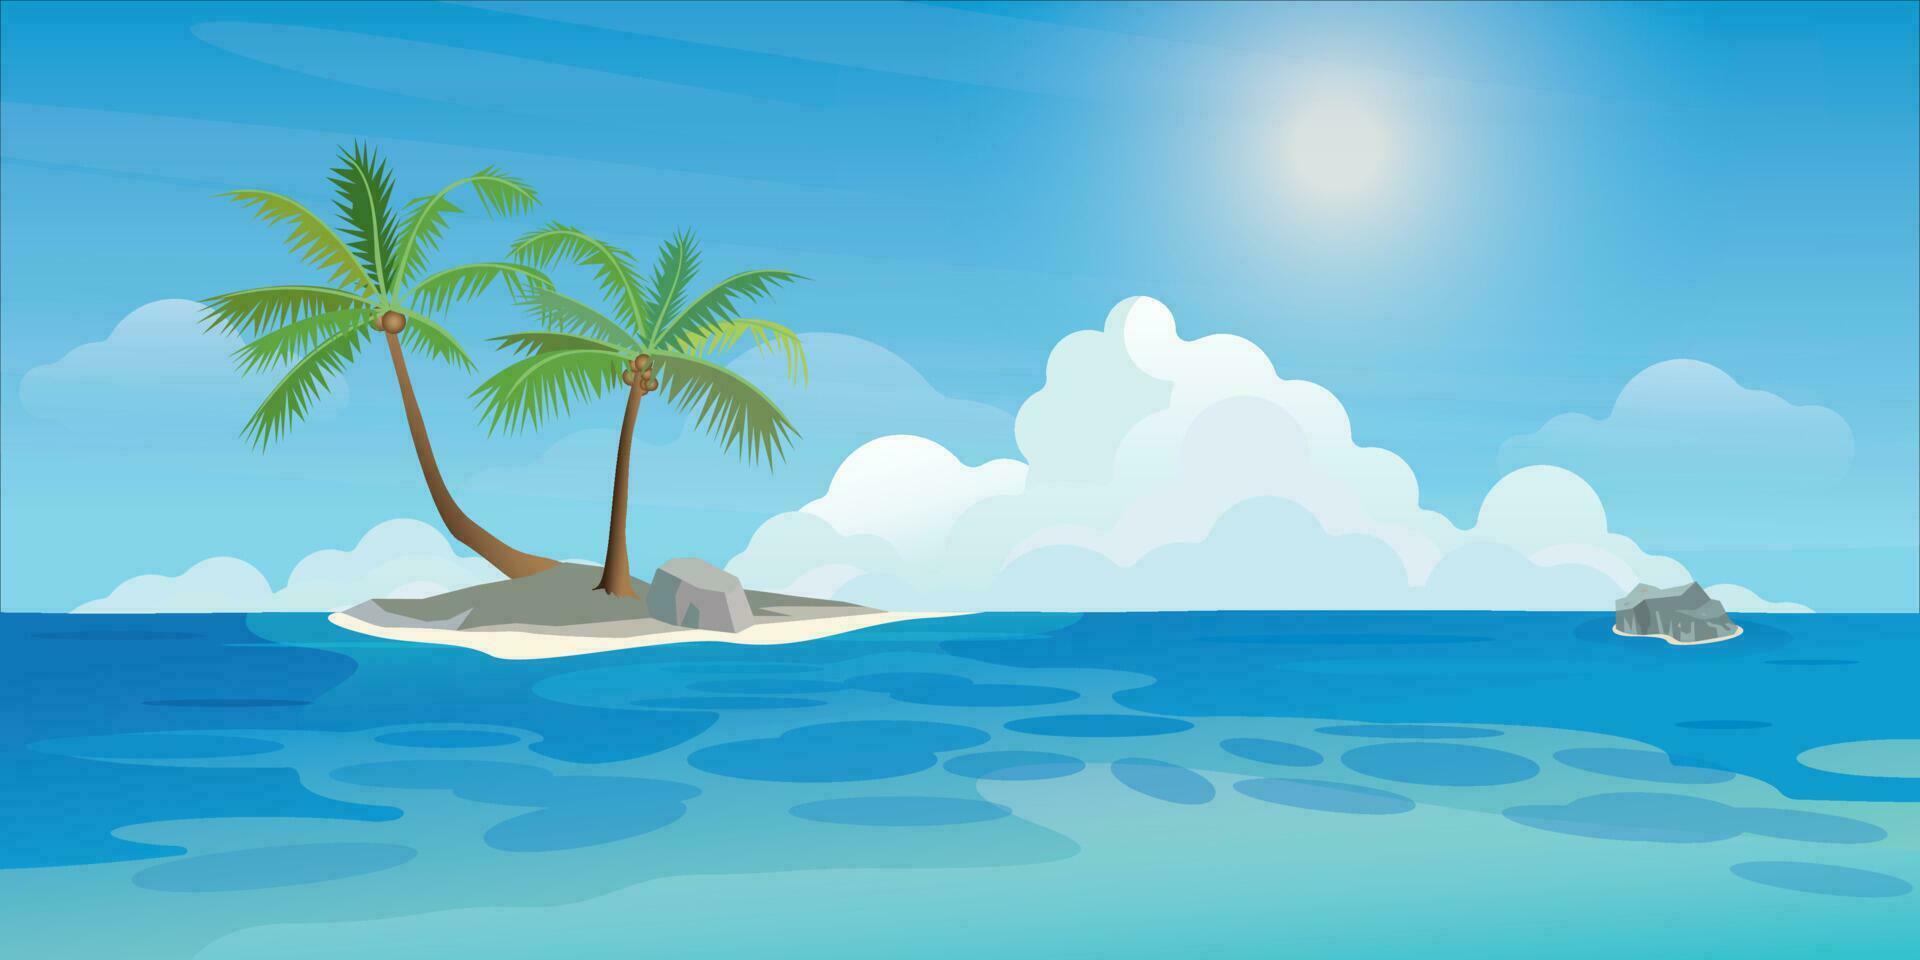 klein tropisch eiland met palm bomen Bij de oceaan in zonnig dag vlak ontwerp. reizen in zomer seizoen concept vector illustratie achtergrond.